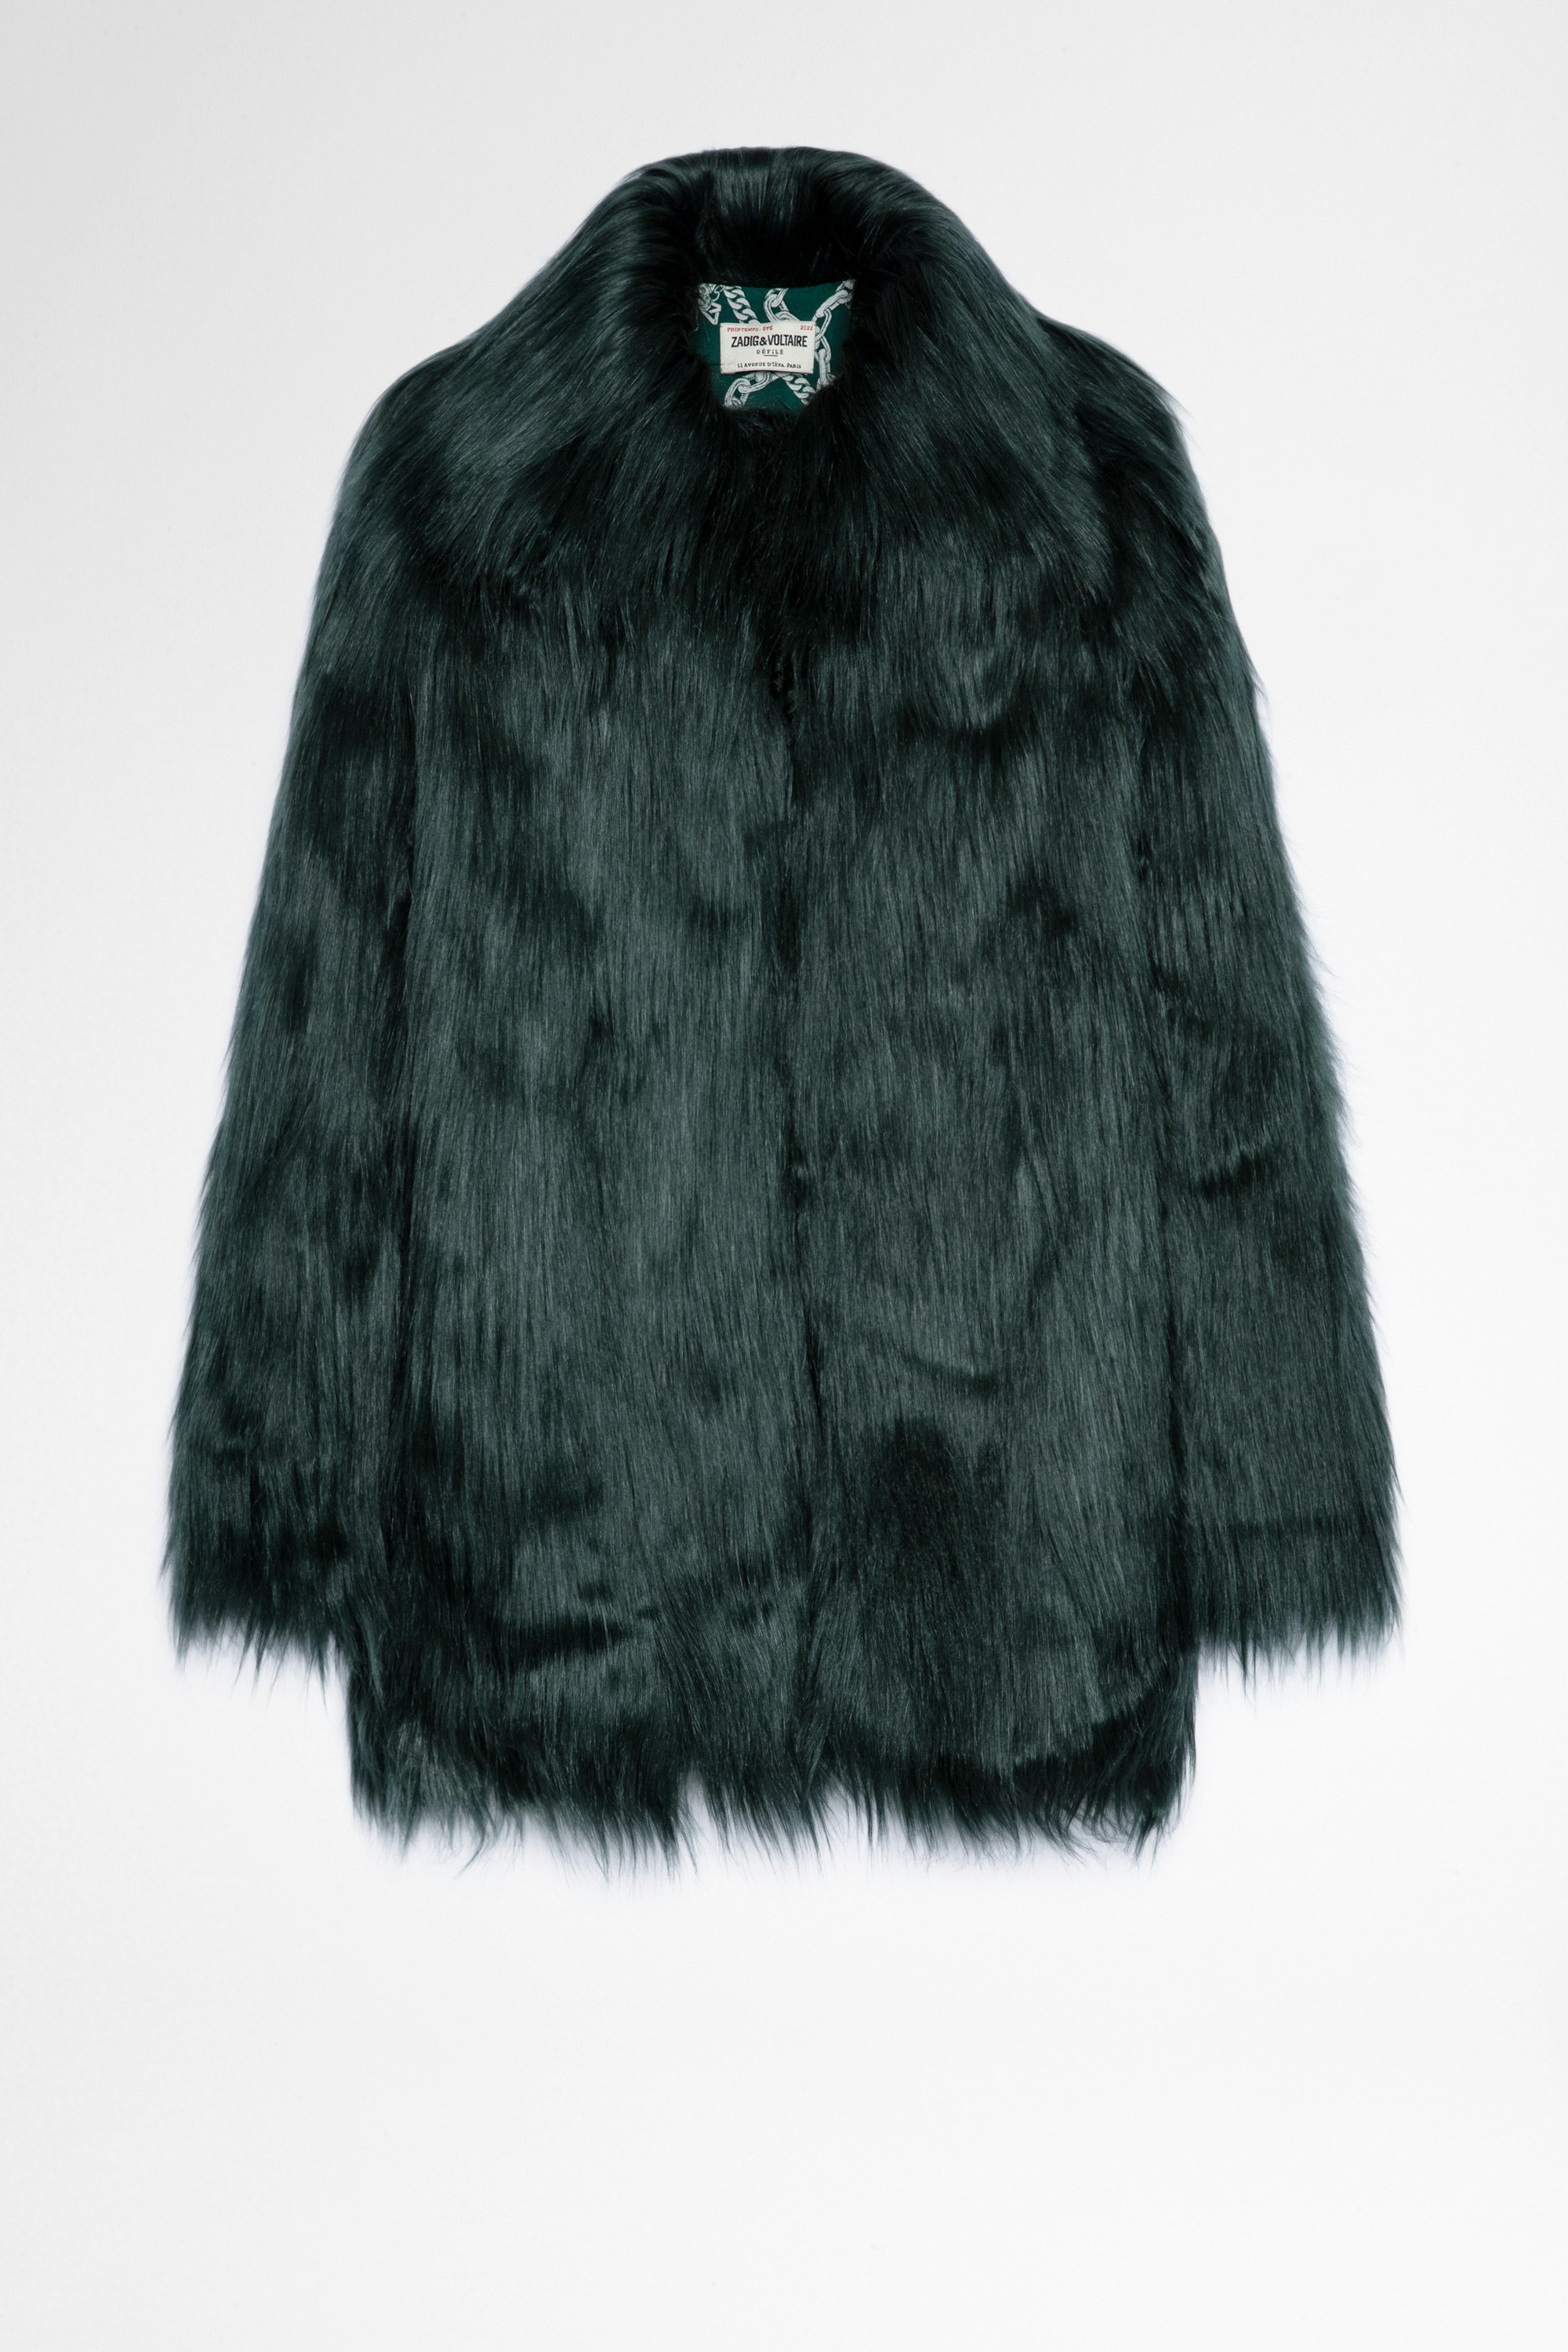 Fridas Coat Women's green faux fur coat